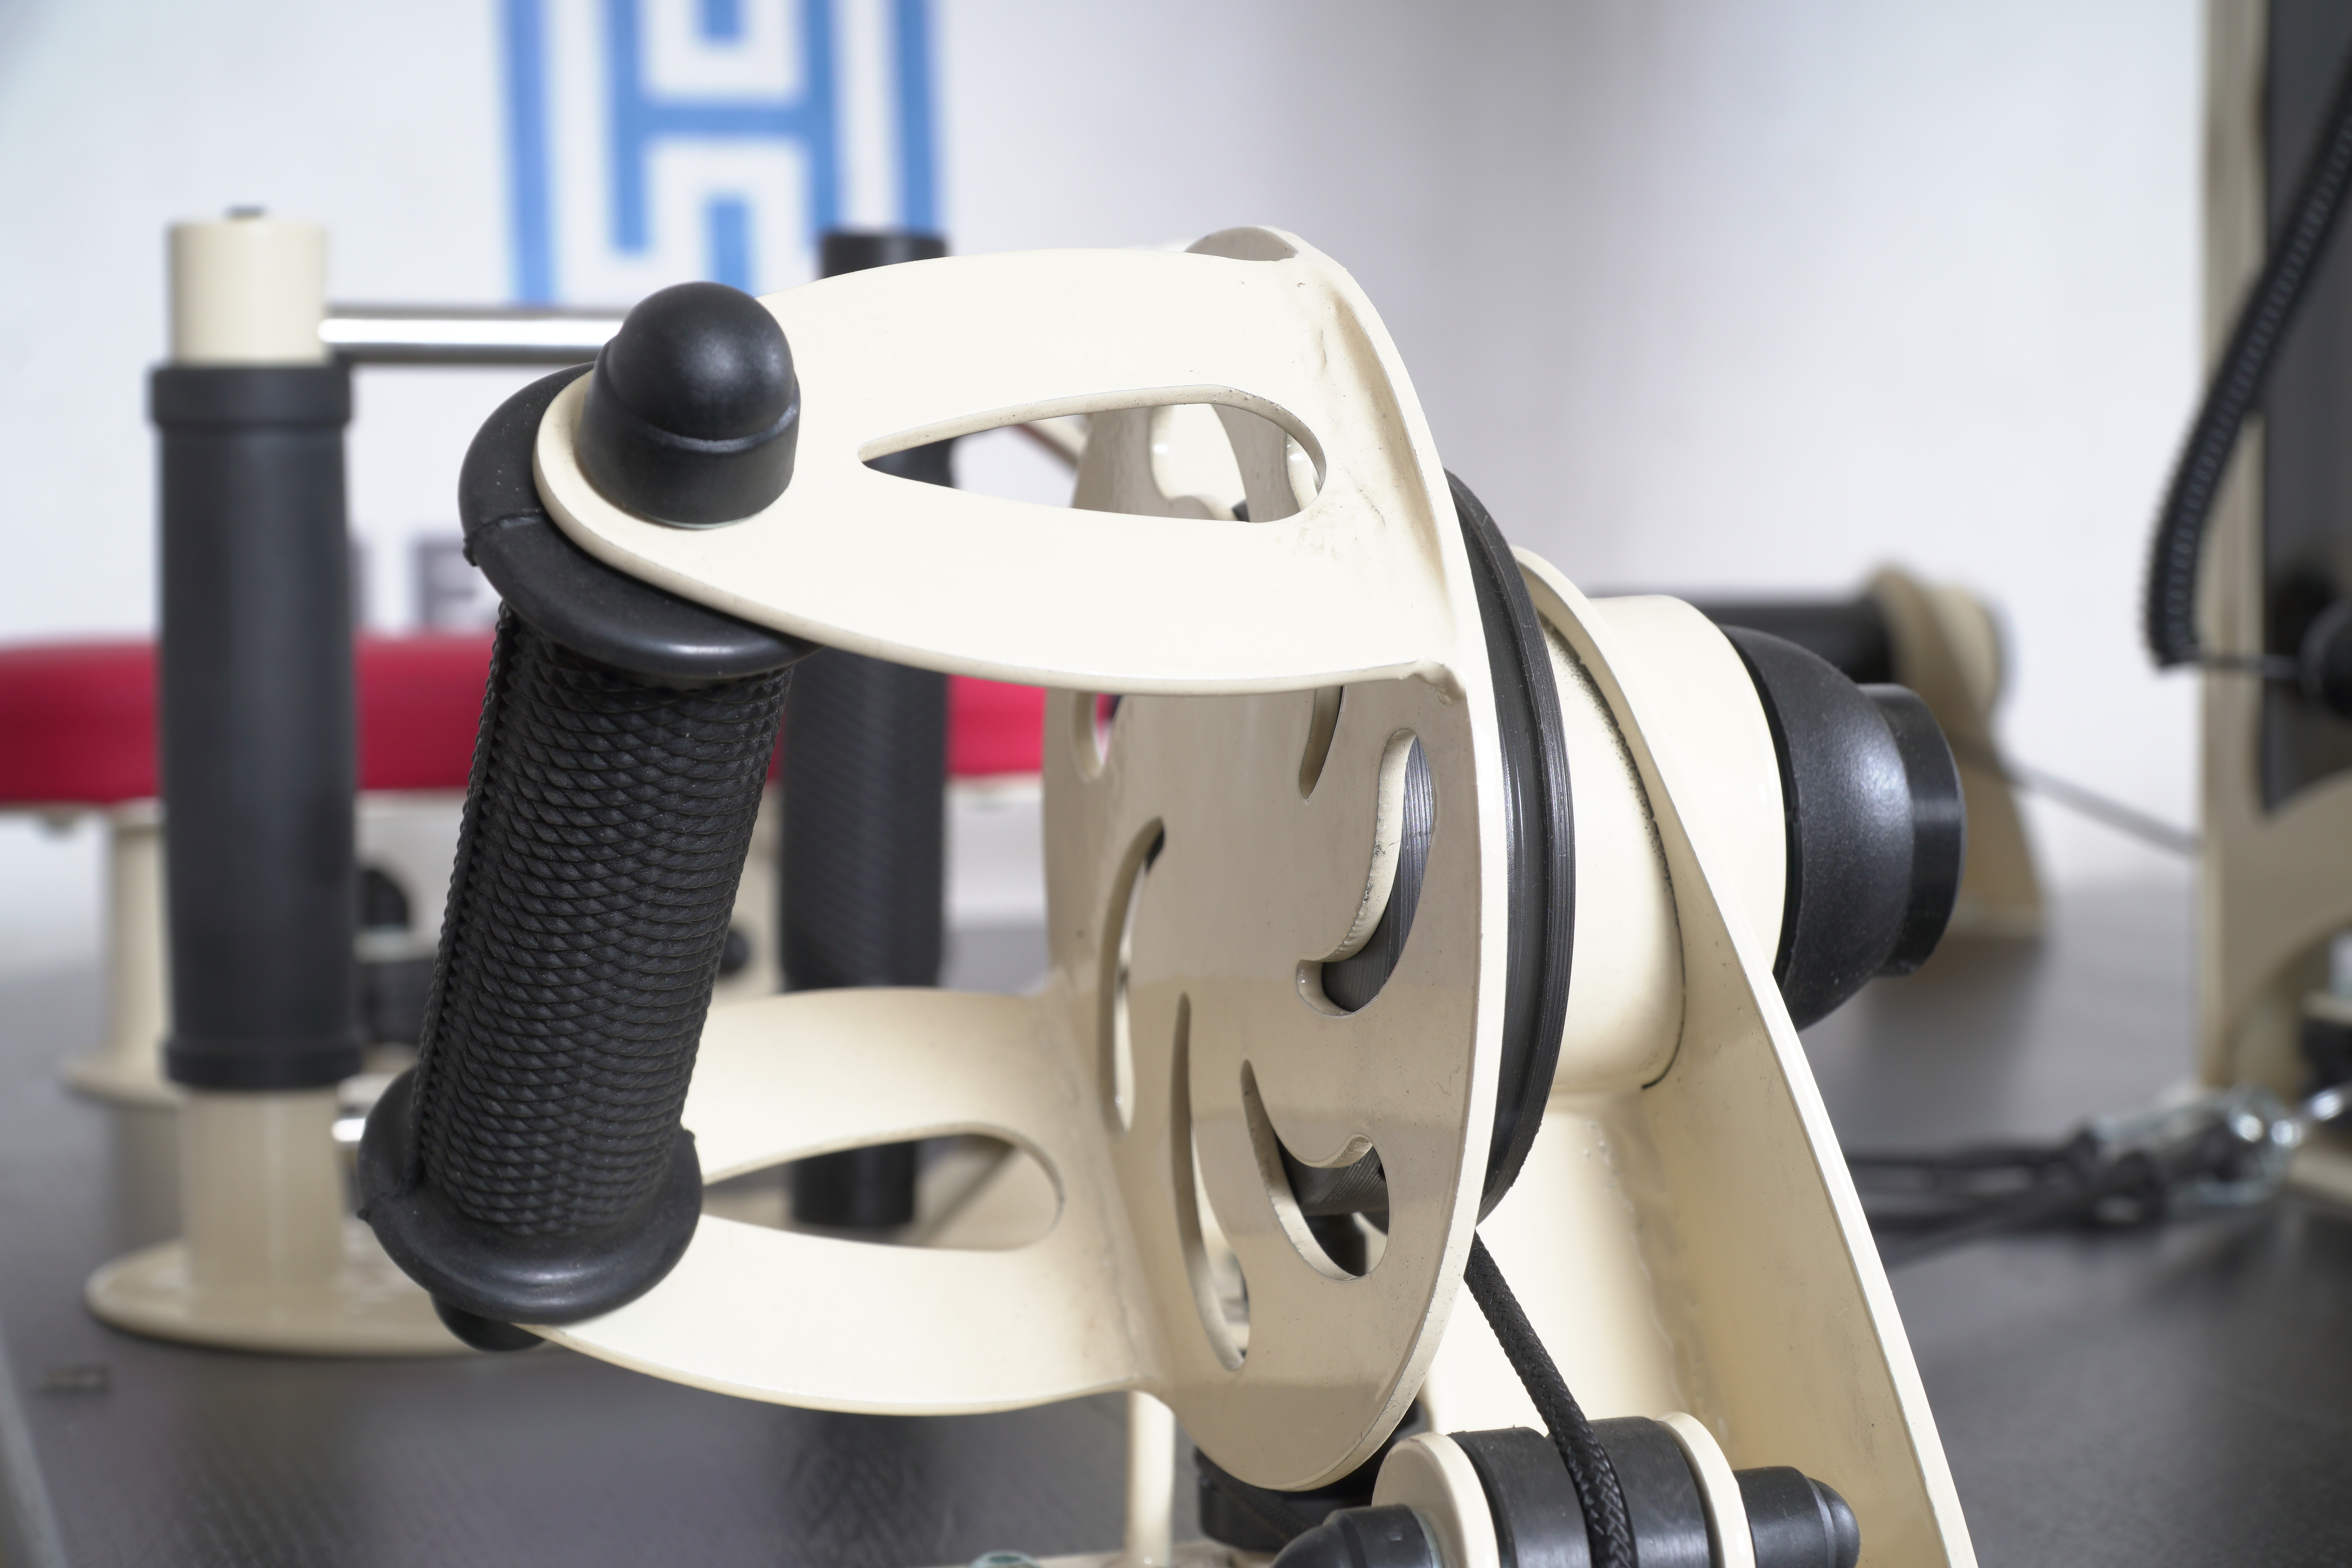 картинка Многофункциональный стол для разработки мелкой моторики рук  от производителя реабилитационного оборудования и ЛФК